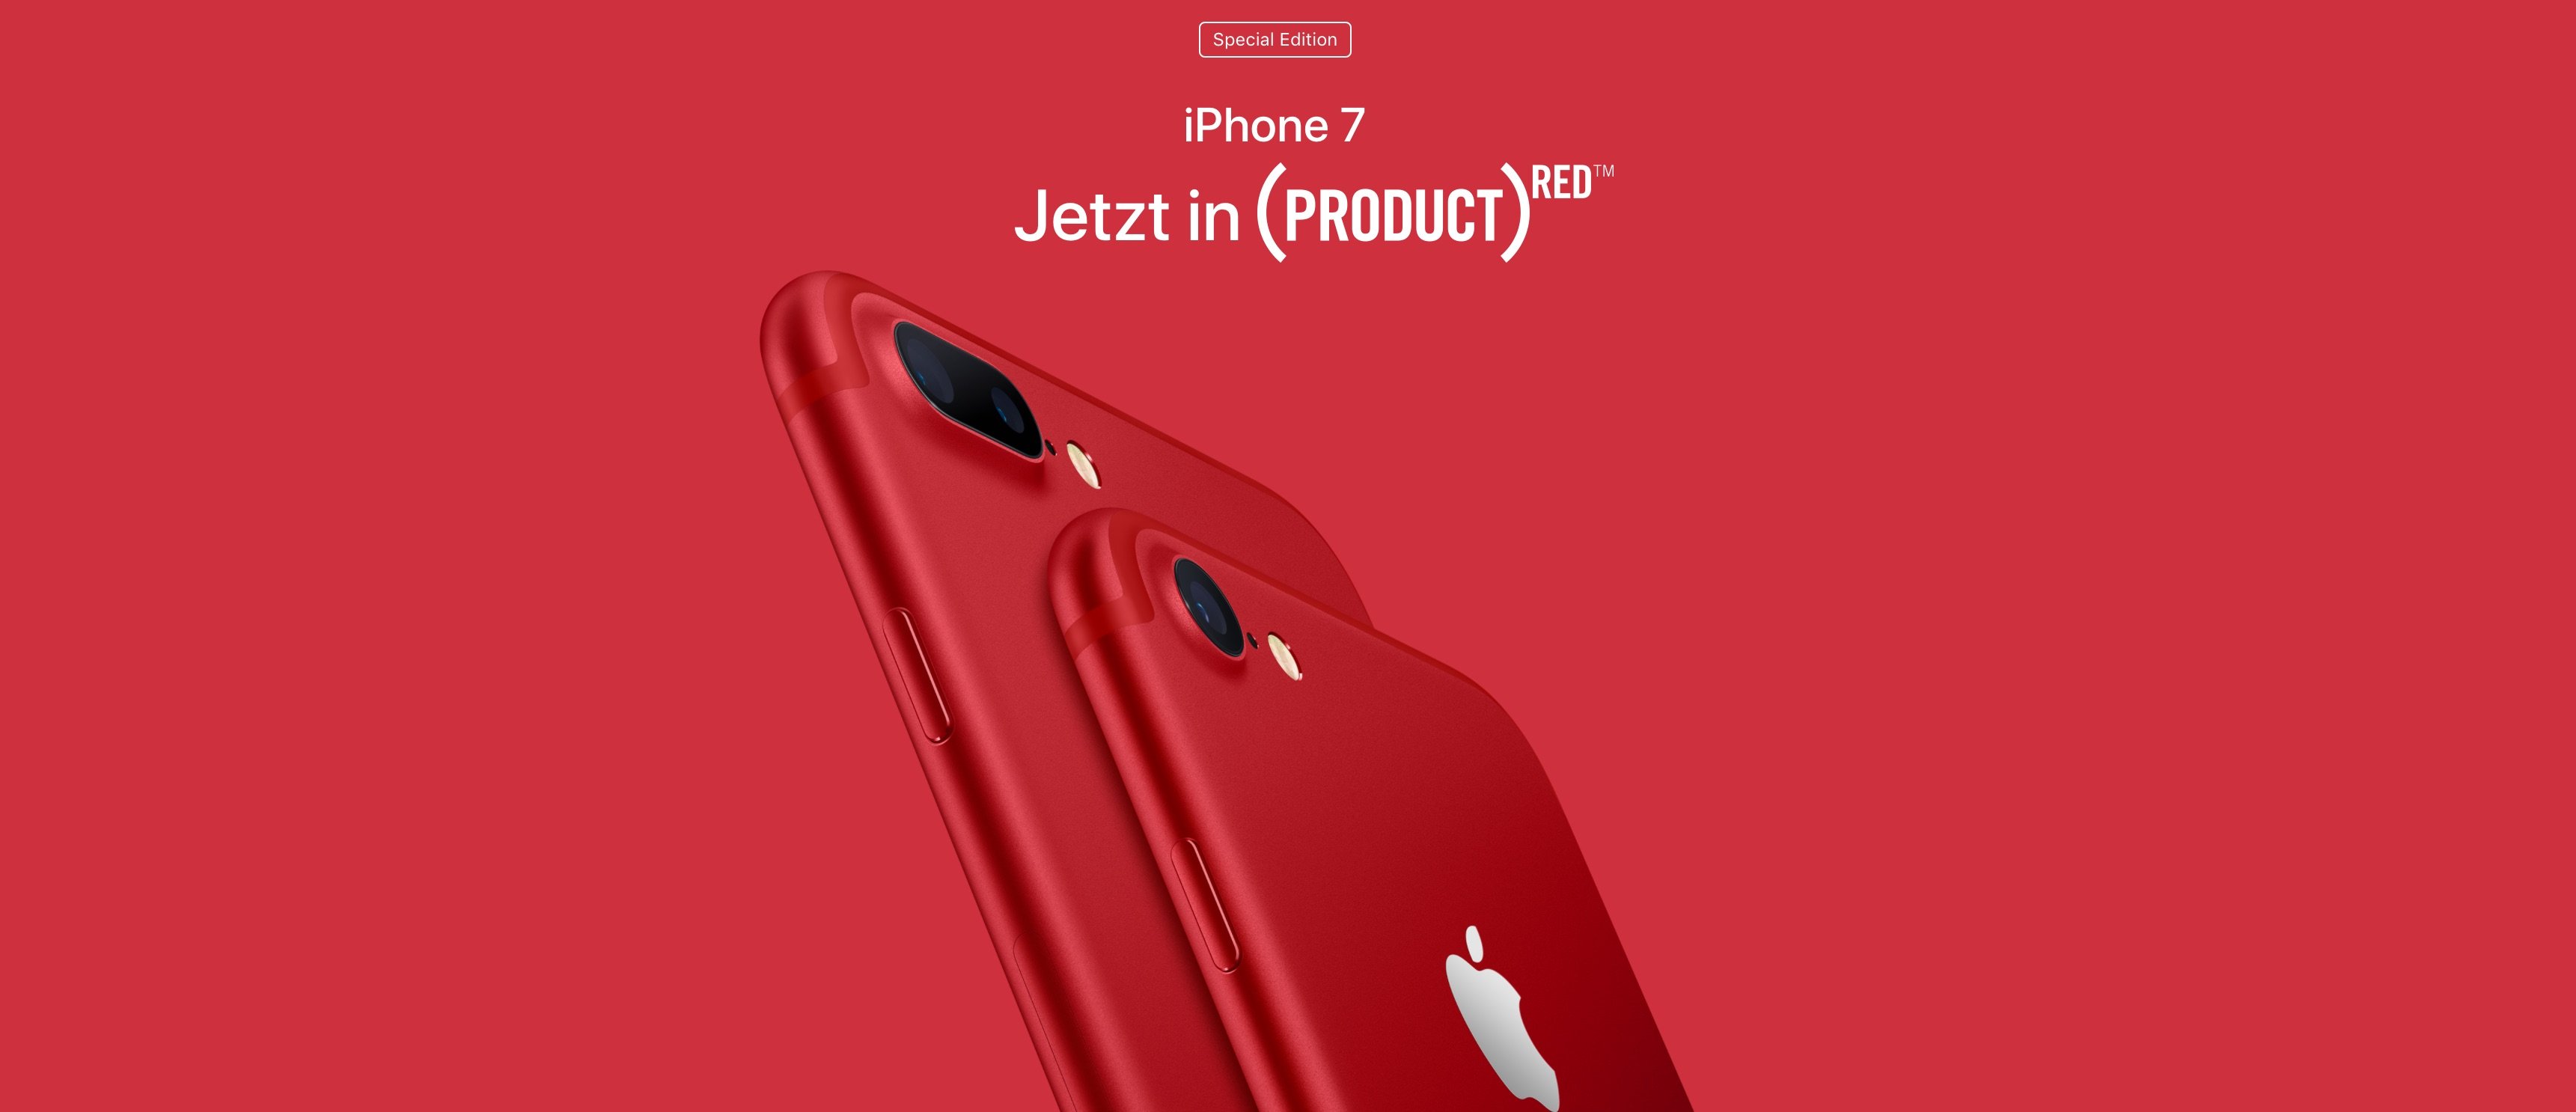 Jetzt bestellen: Rotes iPhone 7 Sondermodell ab sofort erhältlich! 1